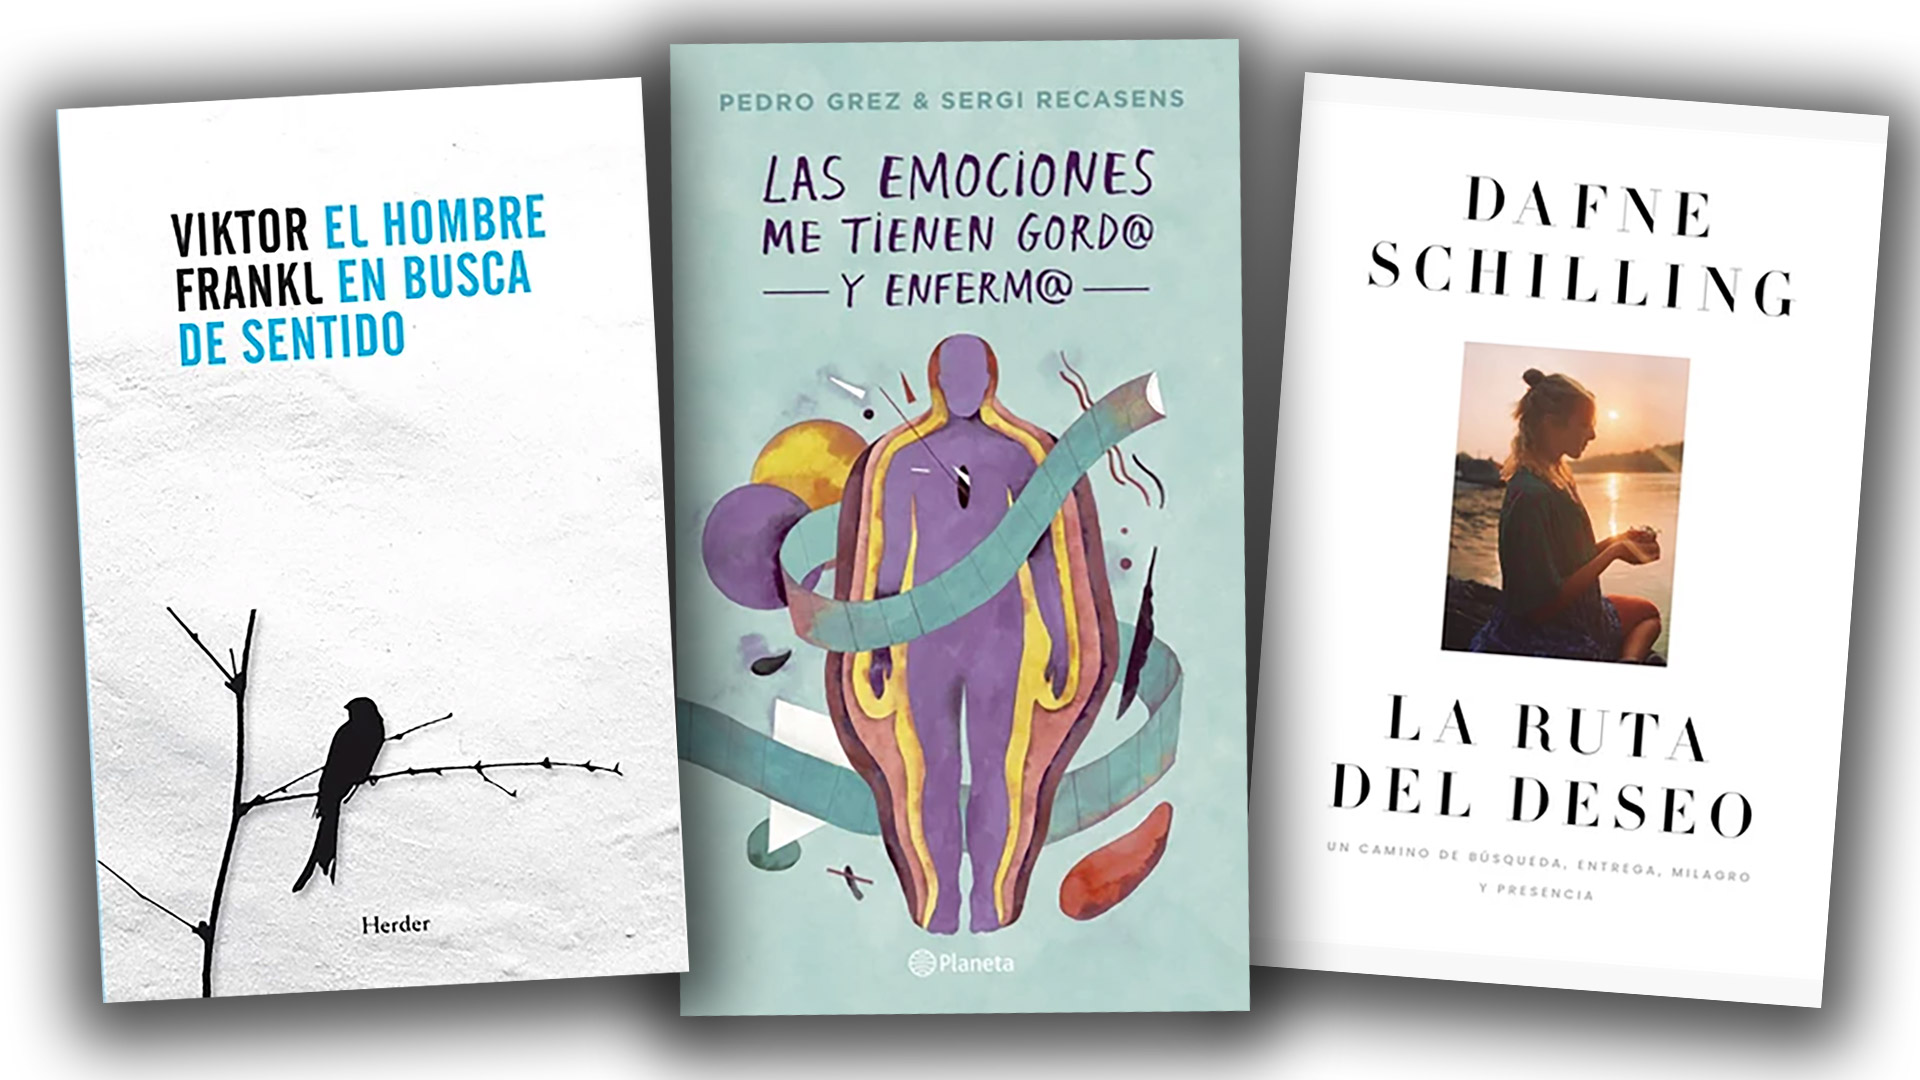 Qué leer el fin de semana: el bestseller “Las emociones me tienen gordo y enfermo”, “La ruta del deseo” y Viktor Frankl por menos de 1.550 pesos argentinos